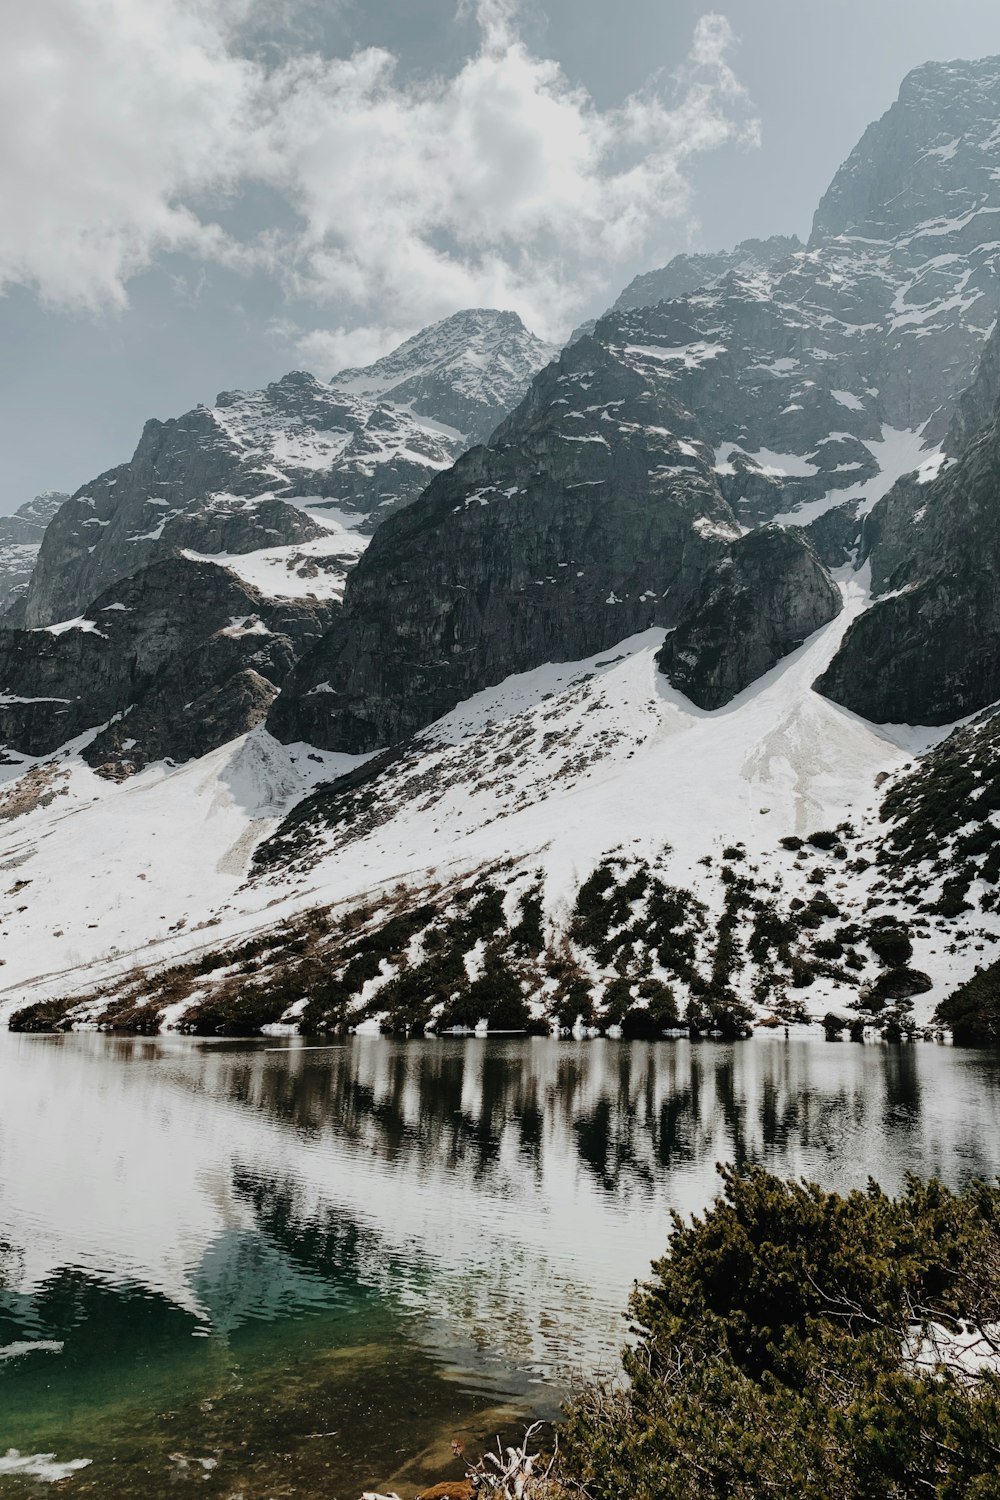 Un lago rodeado de montañas cubiertas de nieve bajo un cielo nublado